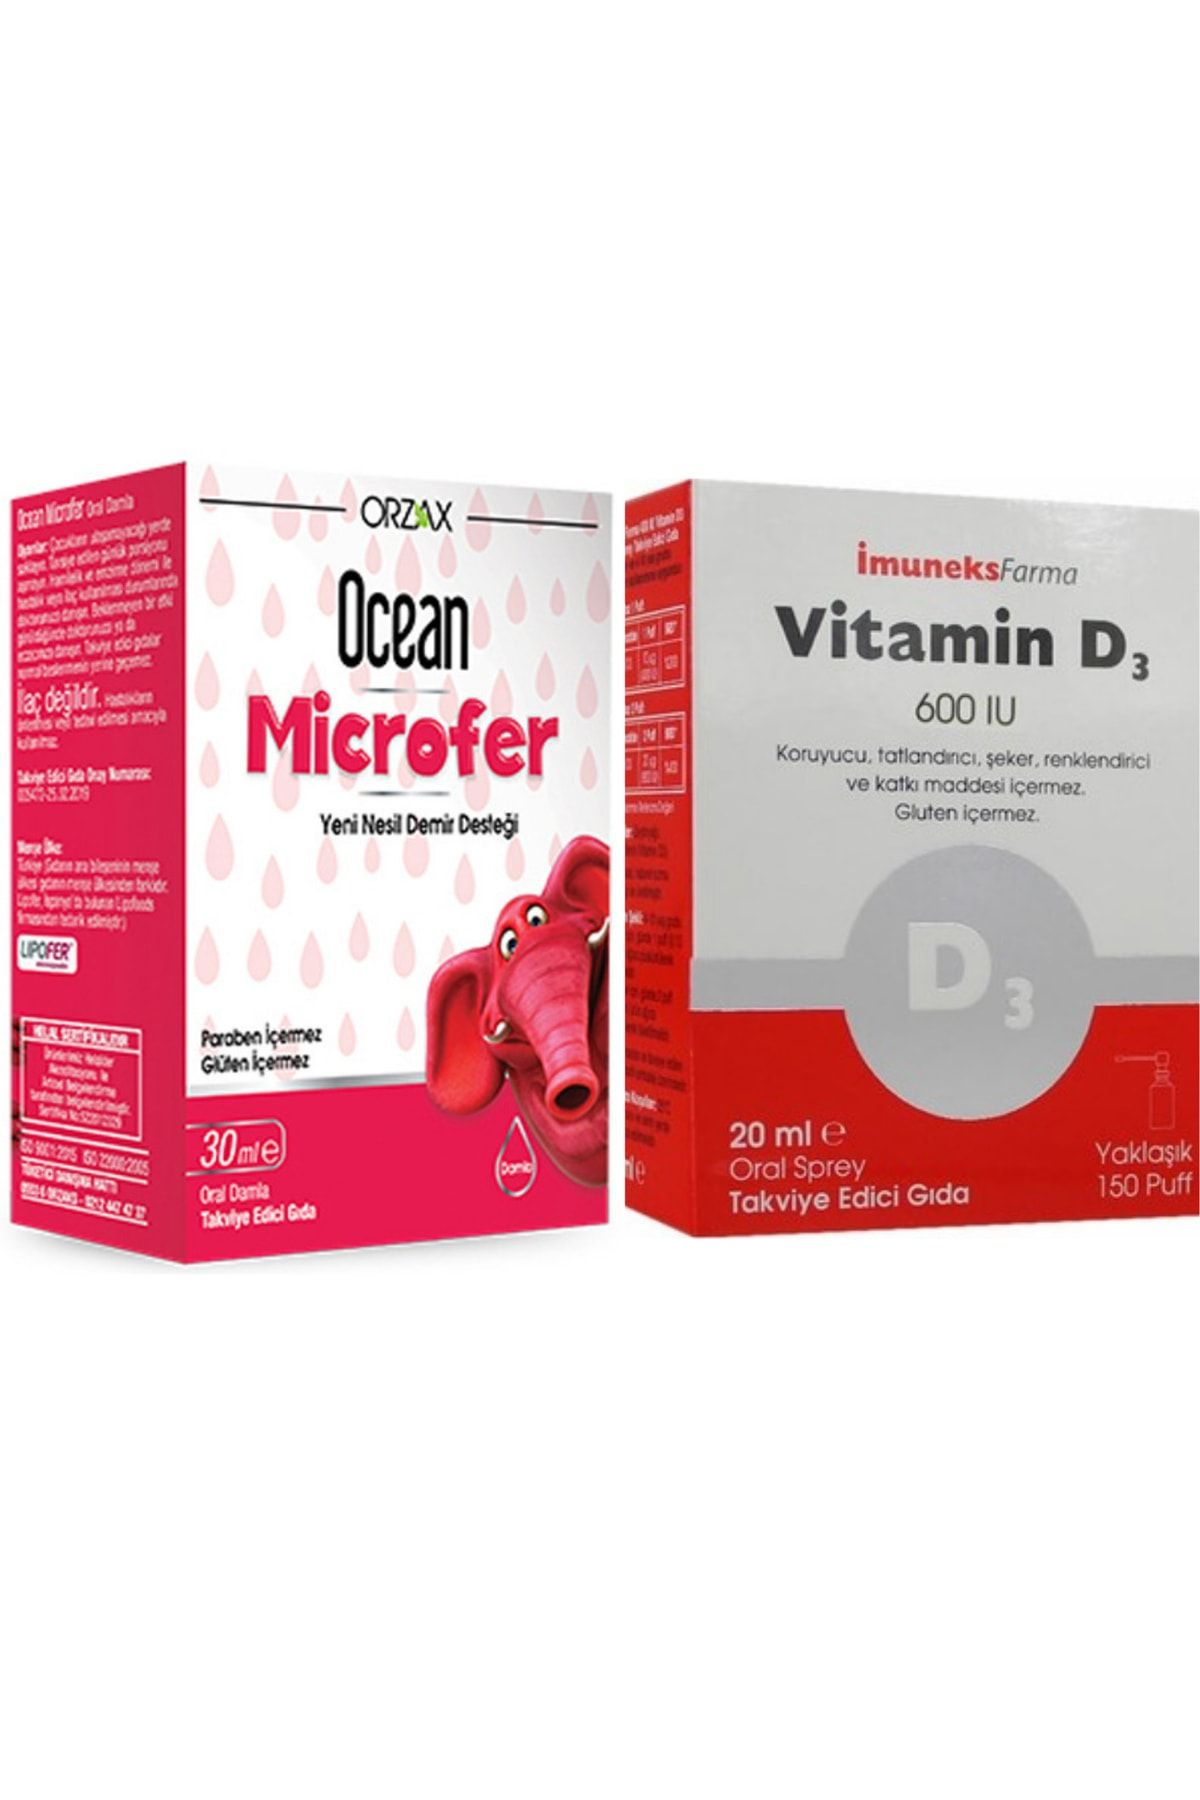 Ocean Microfer Damla 30ml + Imuneks Farma Vitamin D3 600ıu 20ml